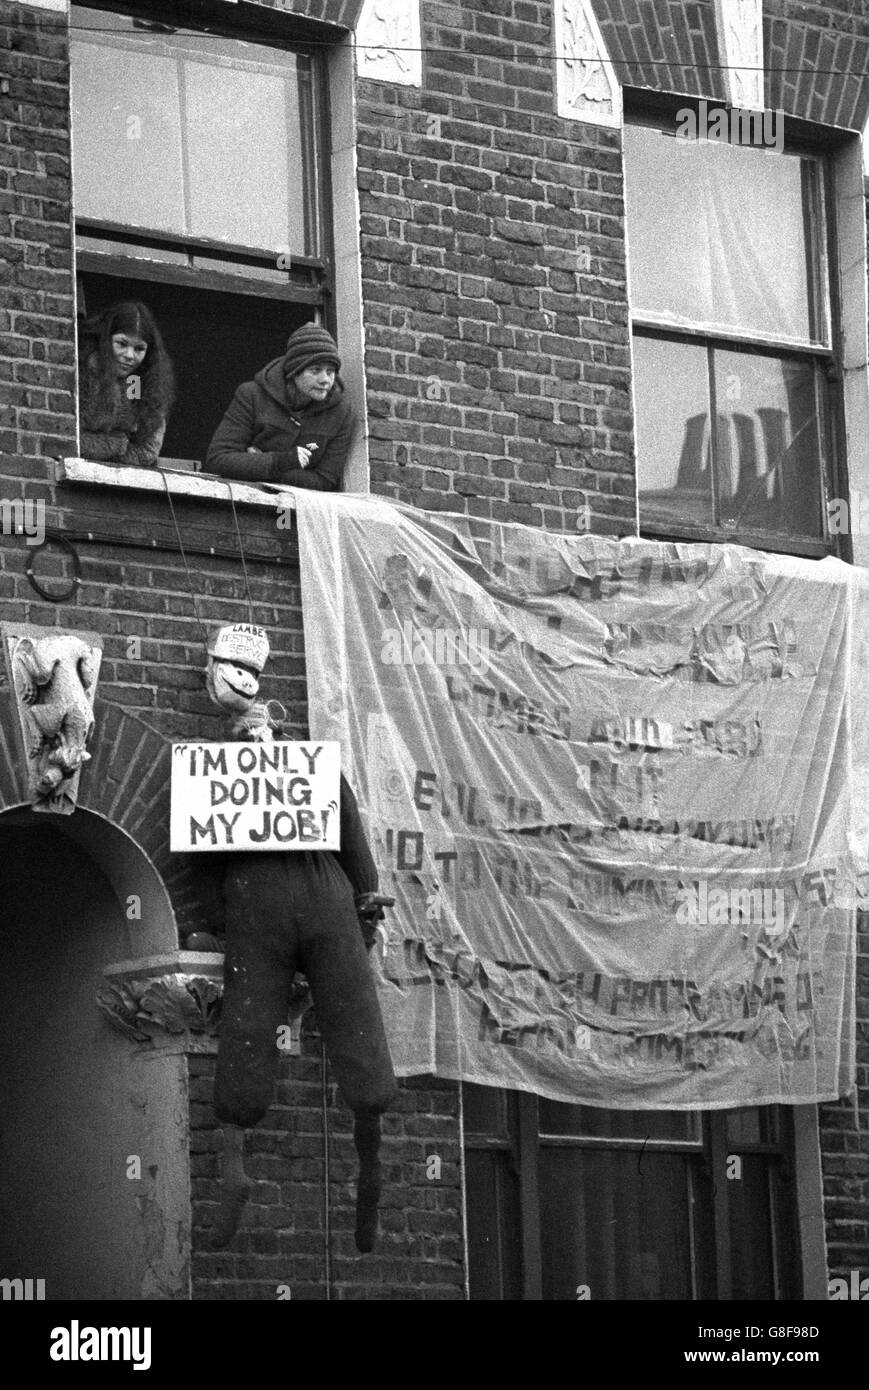 Hausbesetzer, die heute einziehen und ein Haus in St. Agnes Place, Kennington, besetzt haben, hängen ein Banner und ein lebensgroßes Dummy vom Fenster im obersten Stockwerk, um gegen die Politik des Lambeth-Rates zu protestieren, Häuser zu "vandalisieren", um zu verhindern, dass sie von Hausbesetzern besetzt werden. Stockfoto